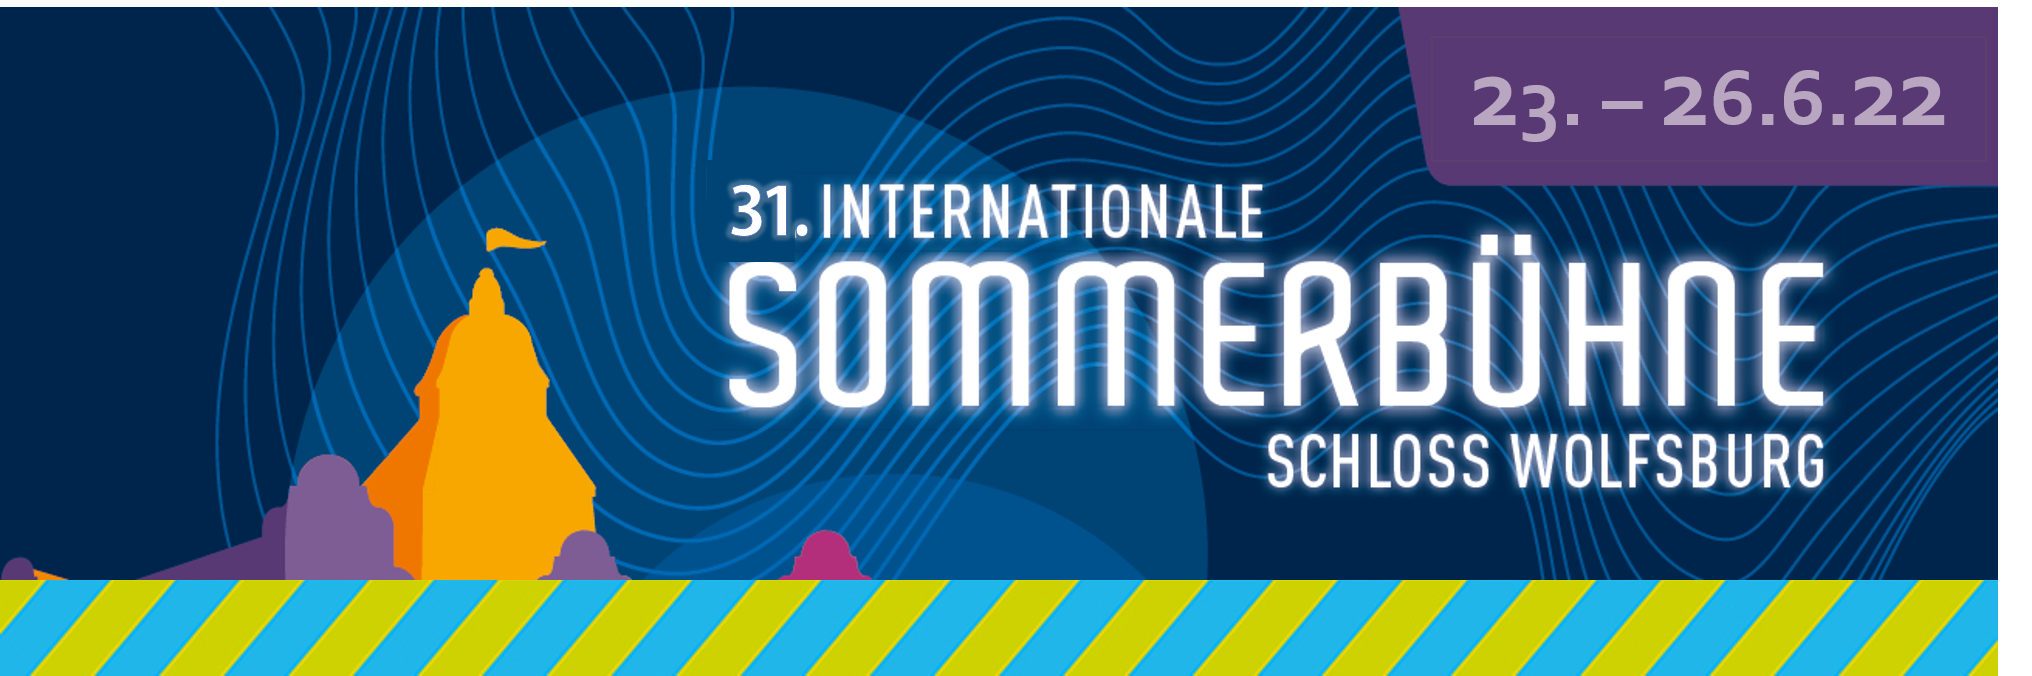 Banner für die 31. Sommerbühne vom 23. bis 26.06.2022